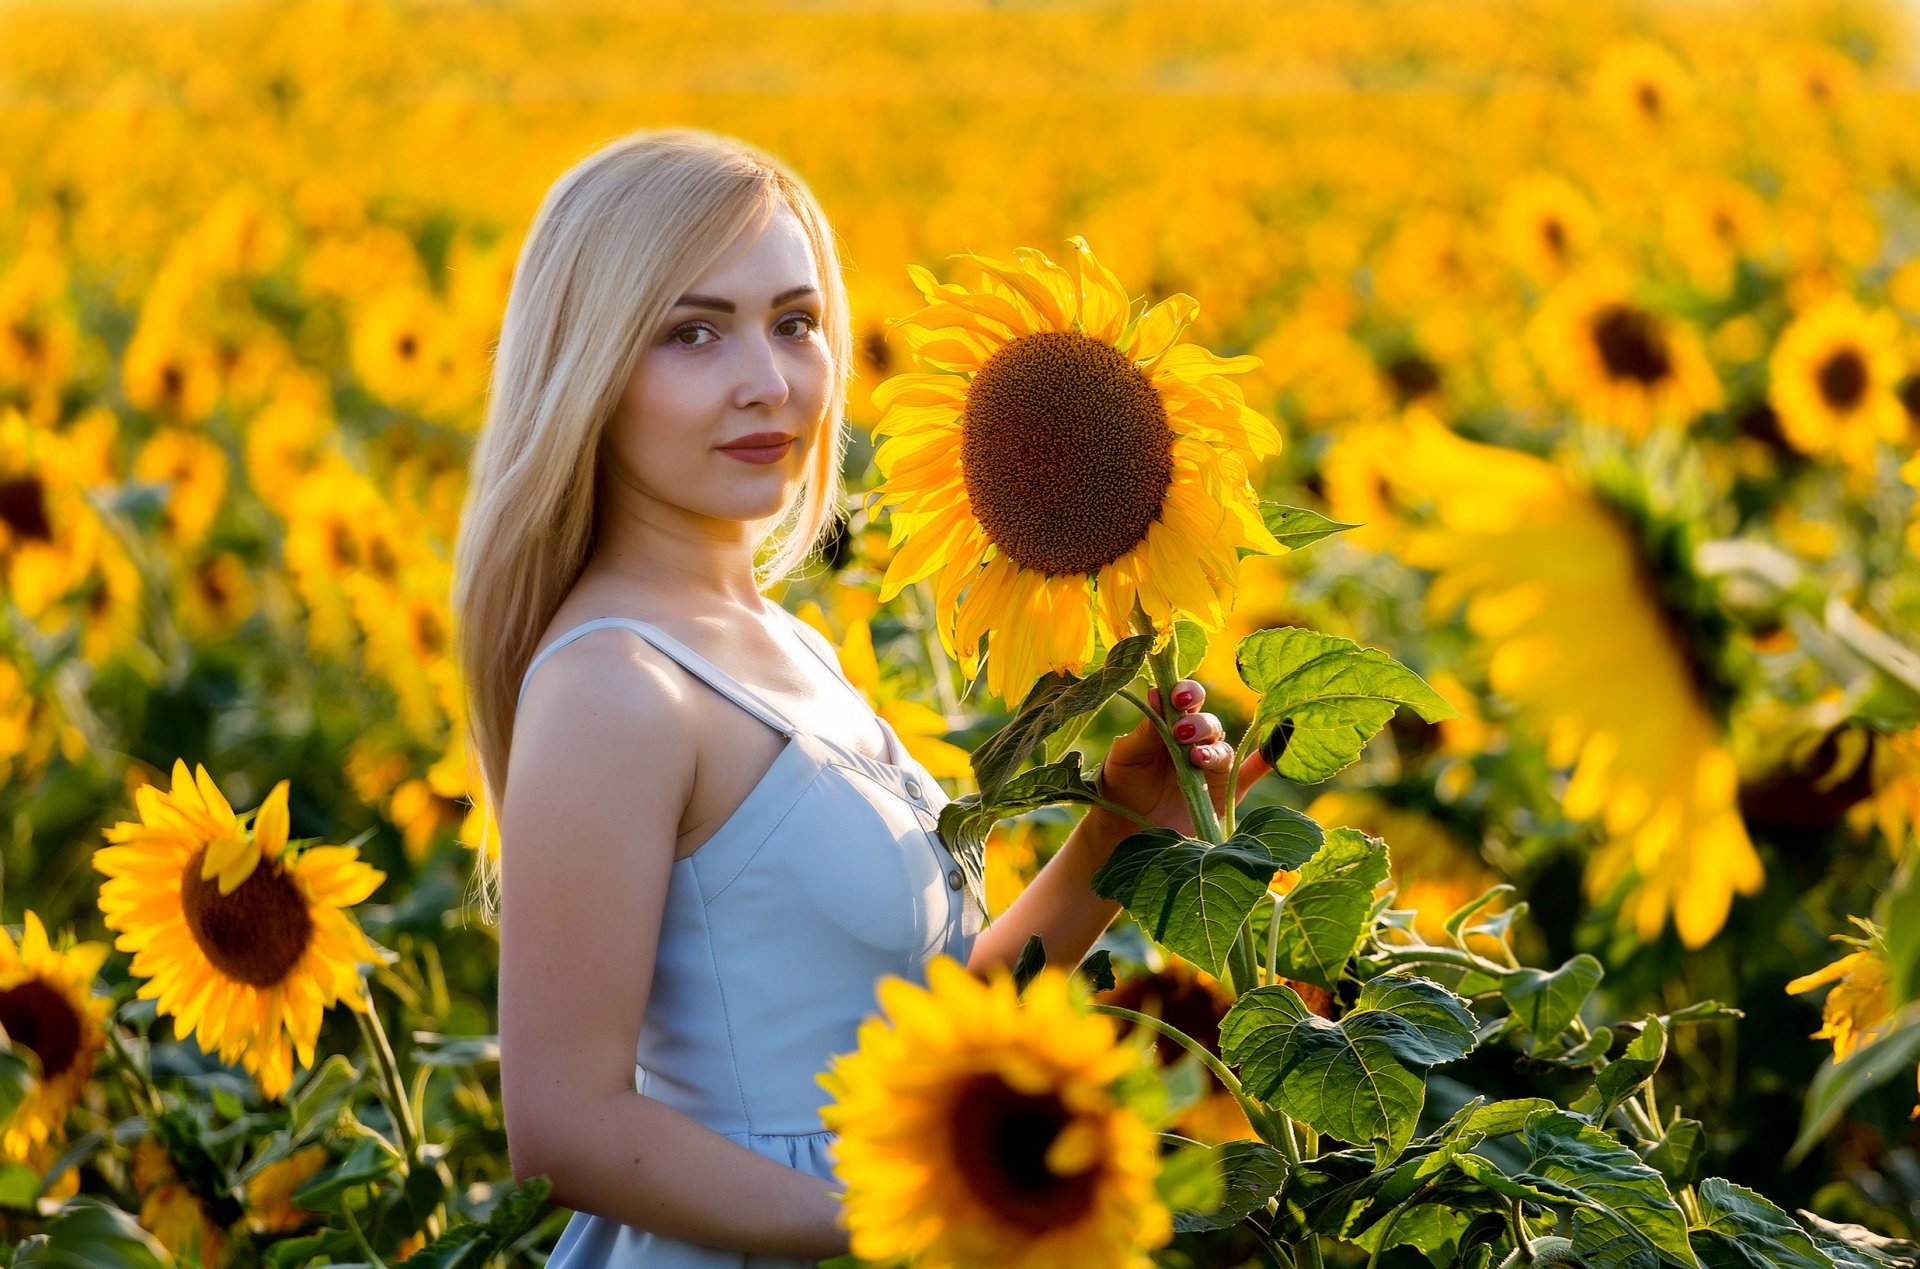 8. Sunflower Blonde - wide 4